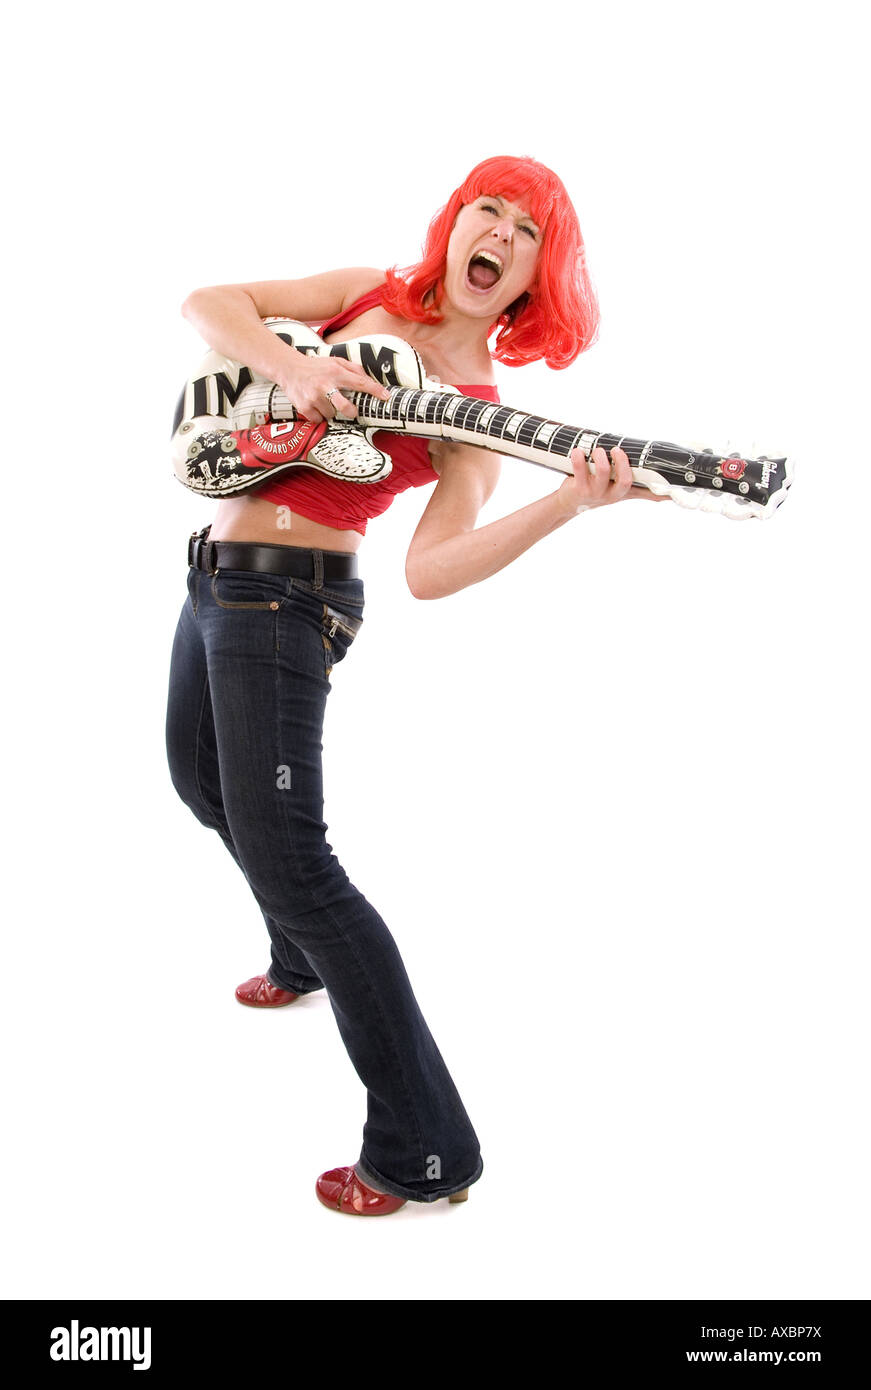 junge Frau mit einer roten Perücke, Luftgitarre zu spielen Stockfoto